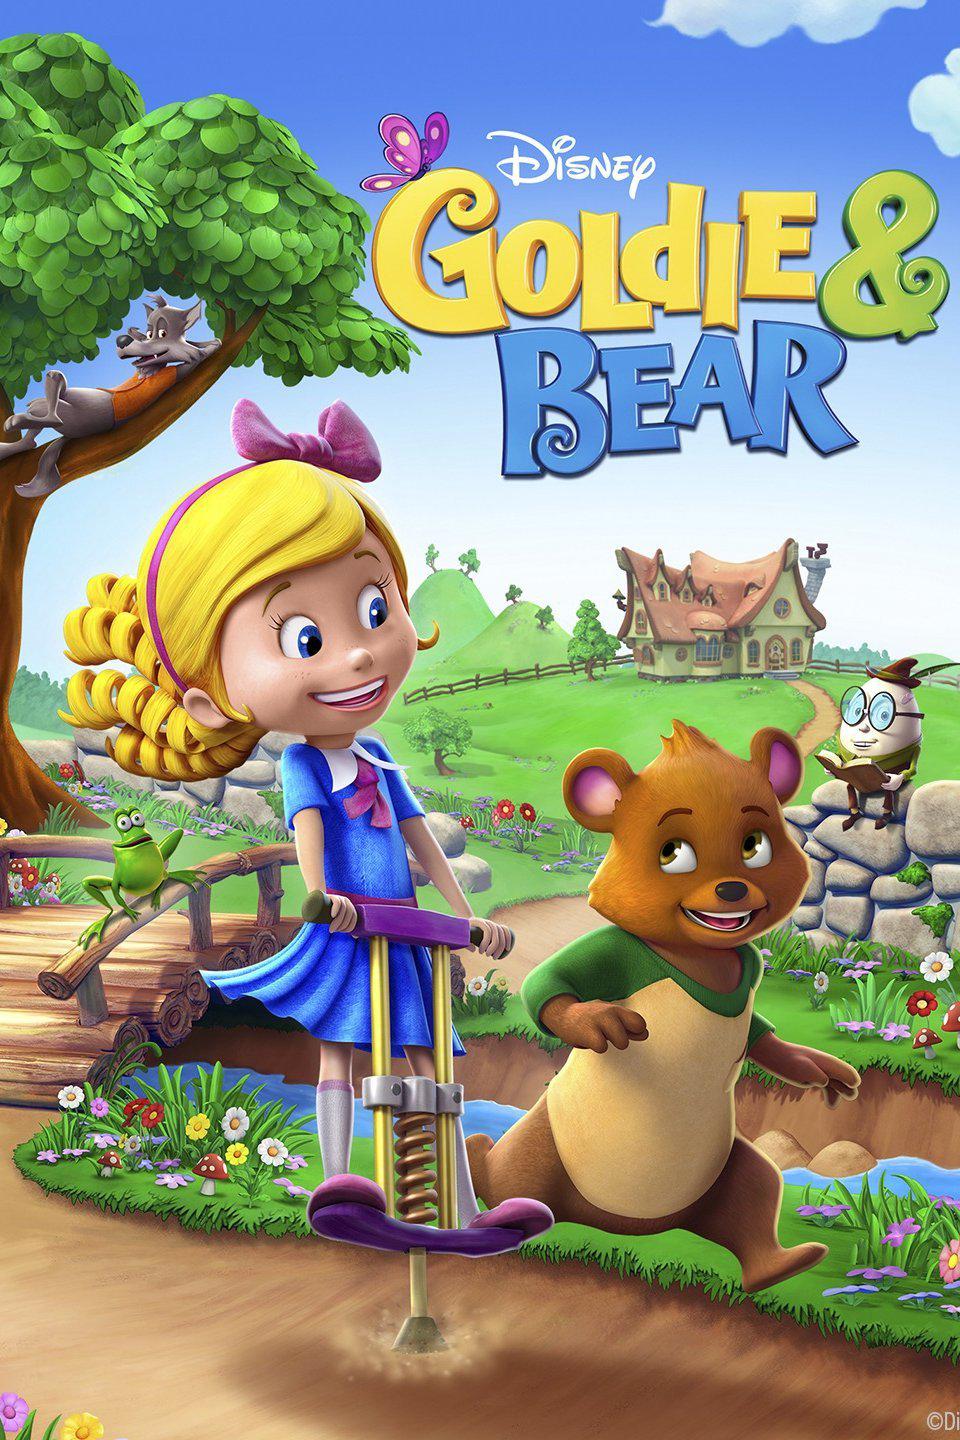 TV ratings for Goldie & Bear in Russia. Disney Junior TV series